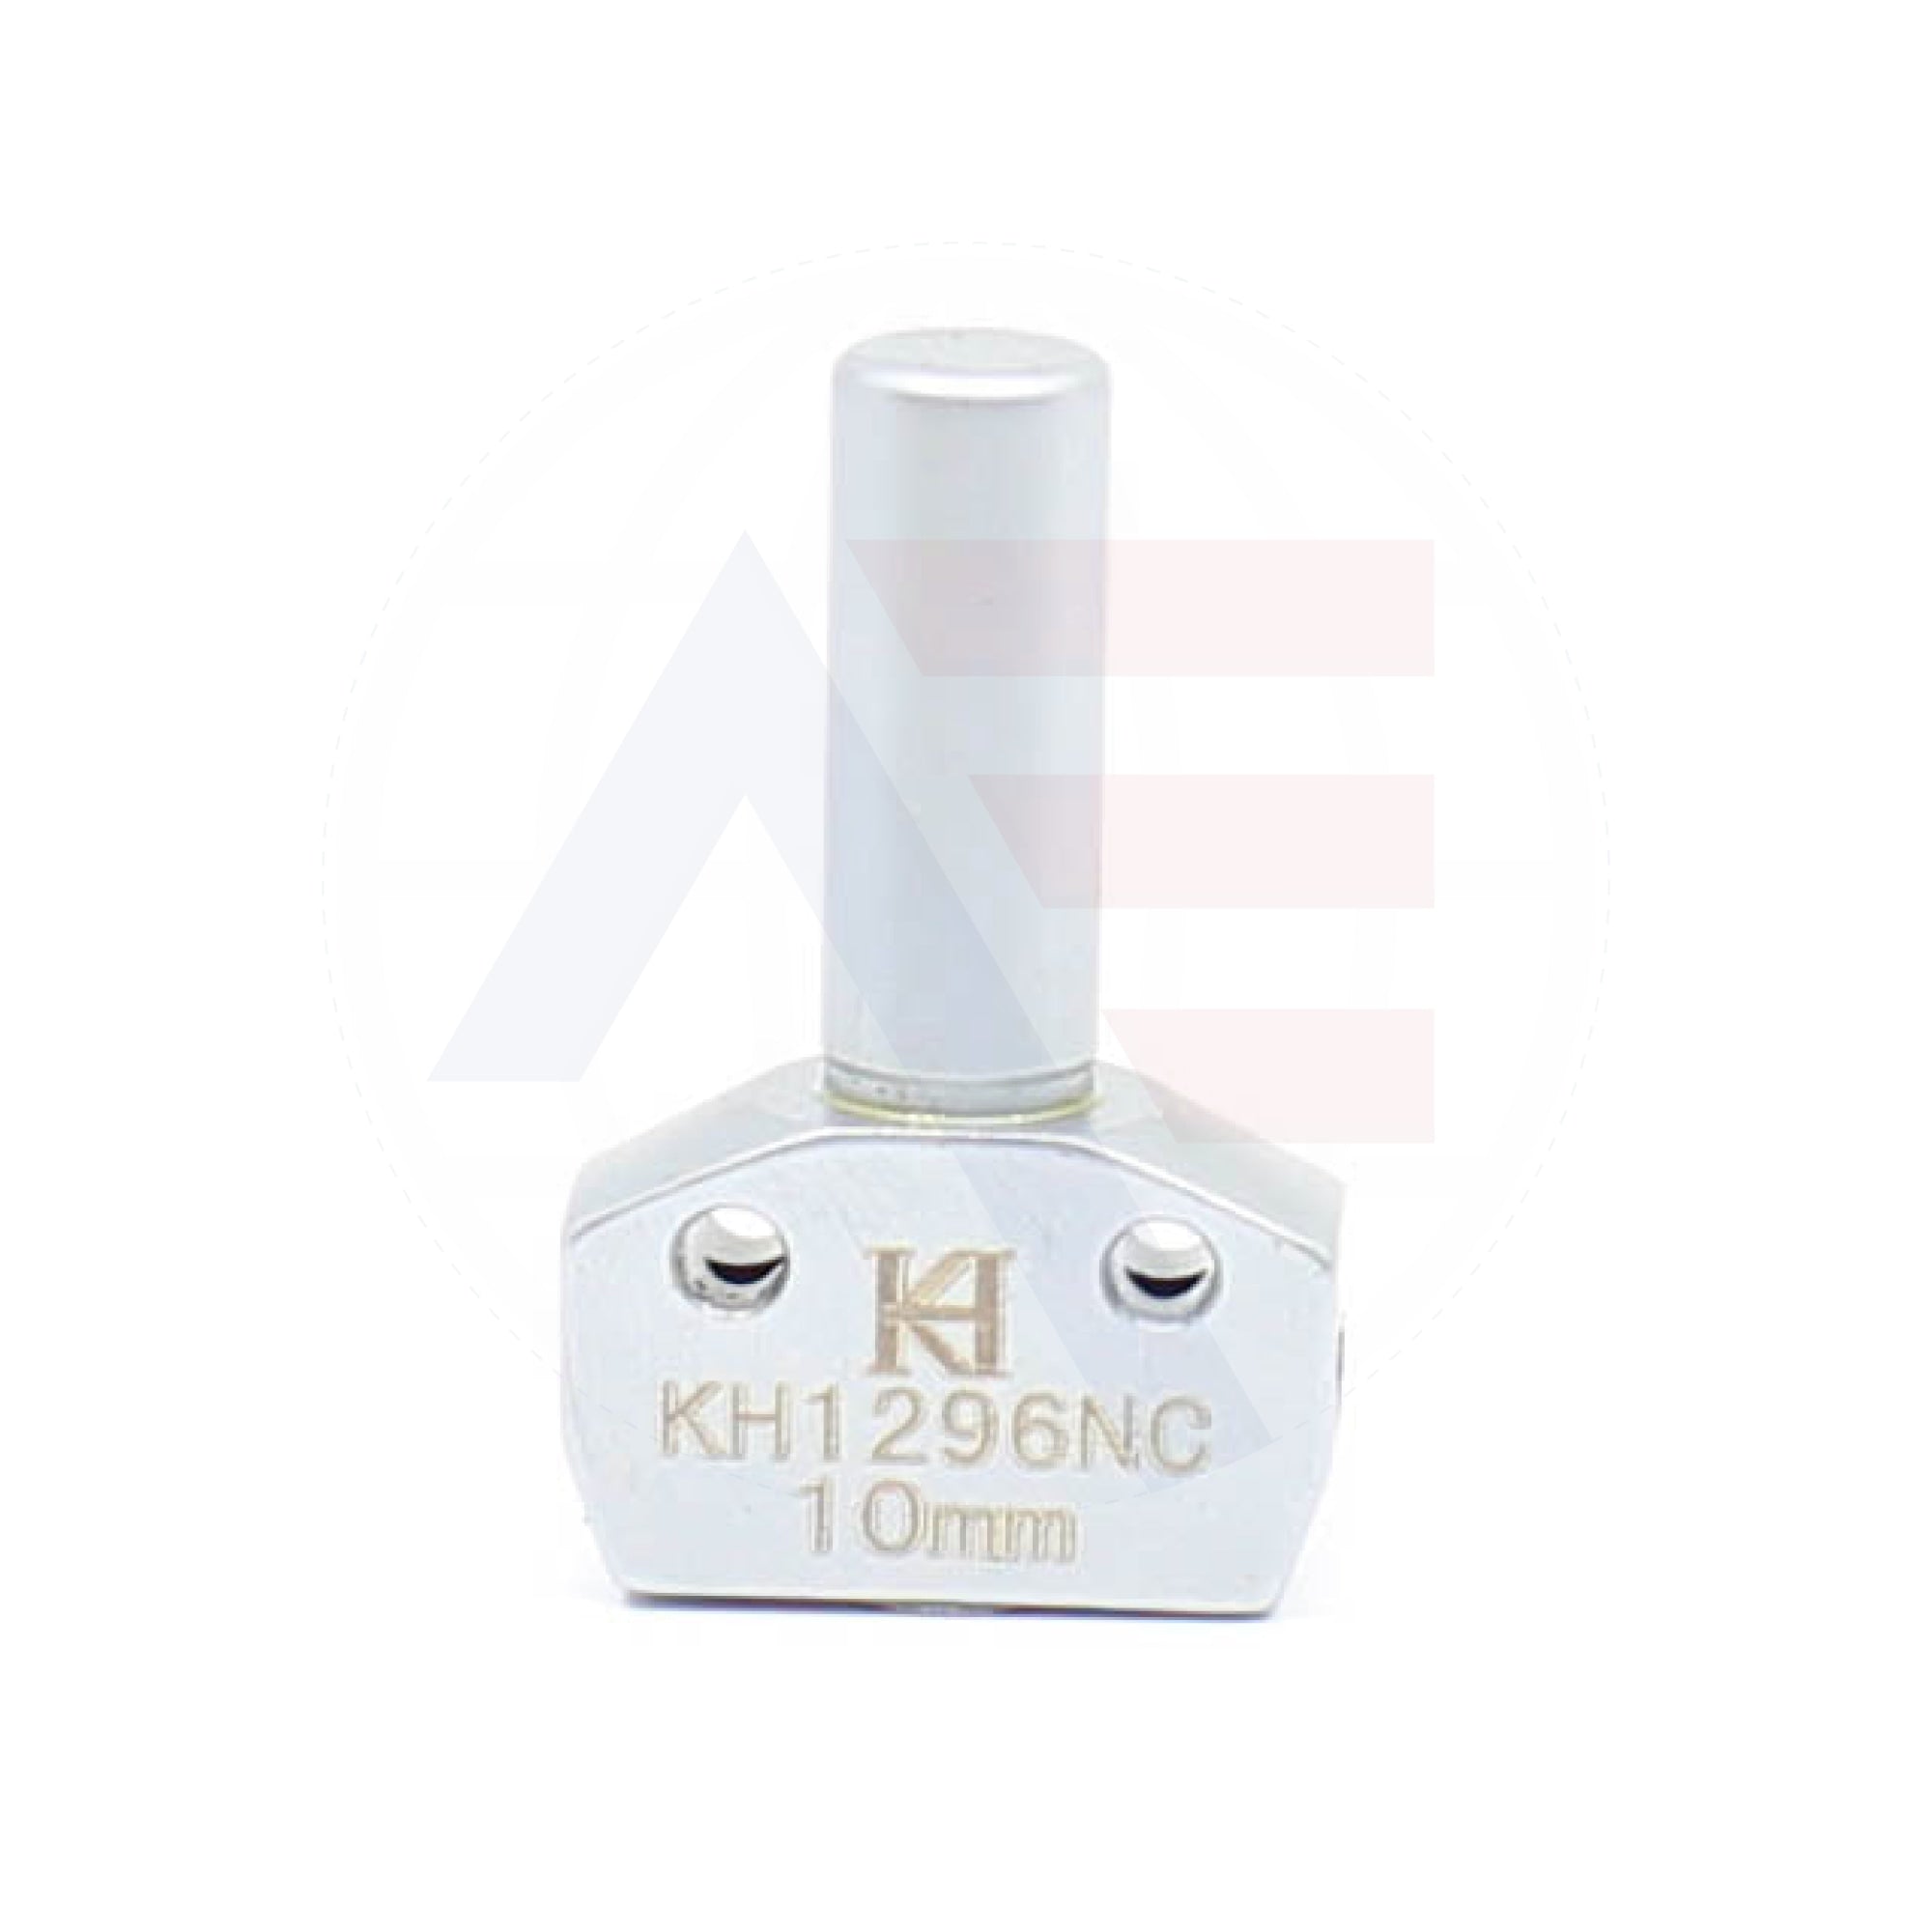 Kh1296Ncx10 Needle Clamp